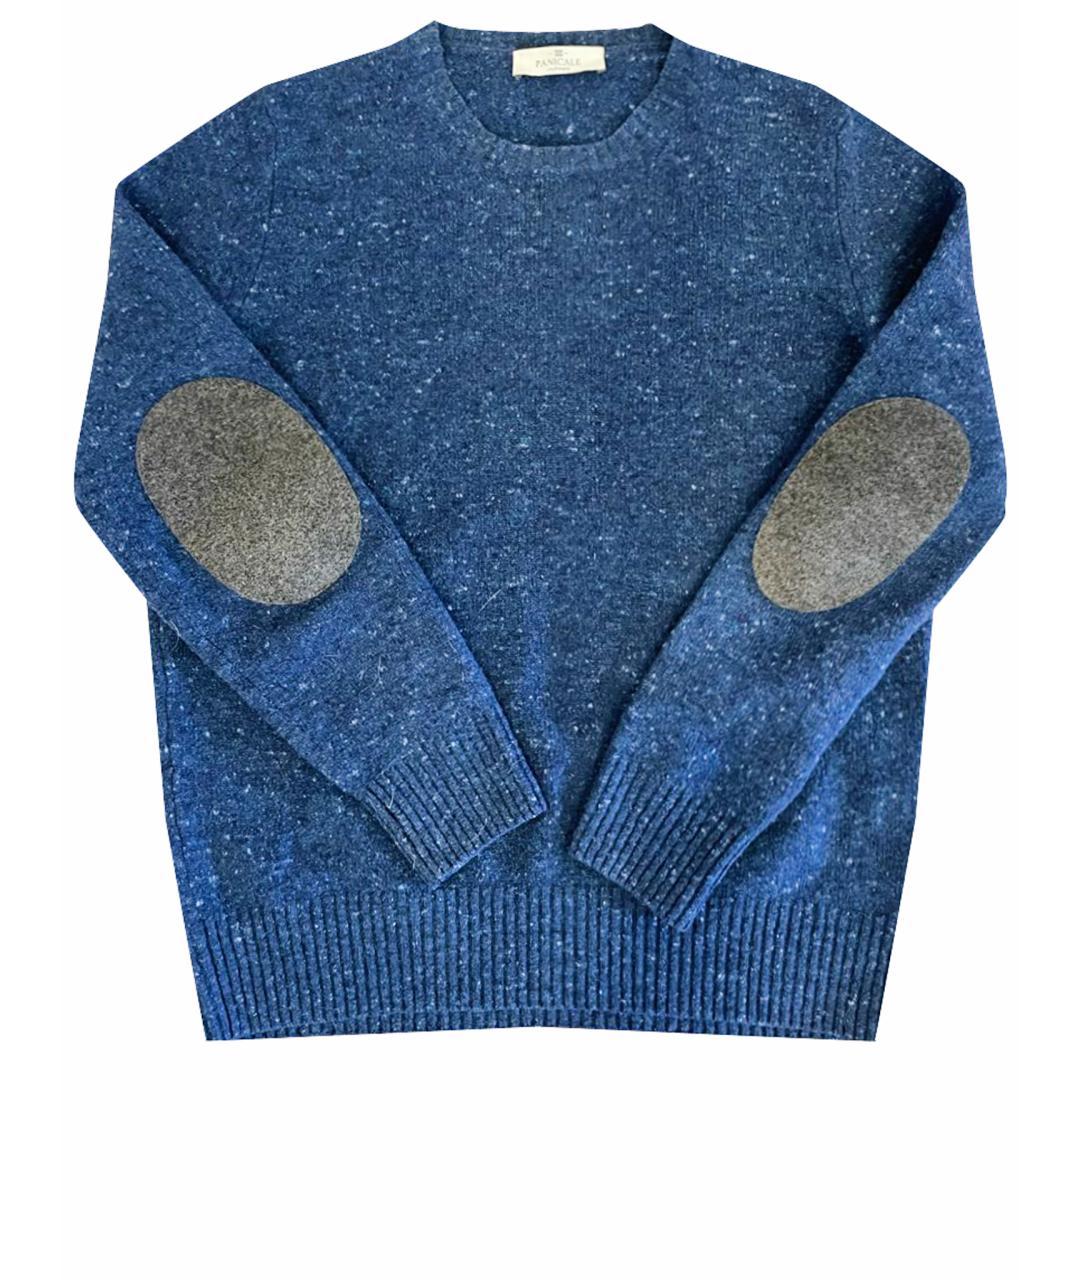 PANICALE Синий кашемировый джемпер / свитер, фото 1